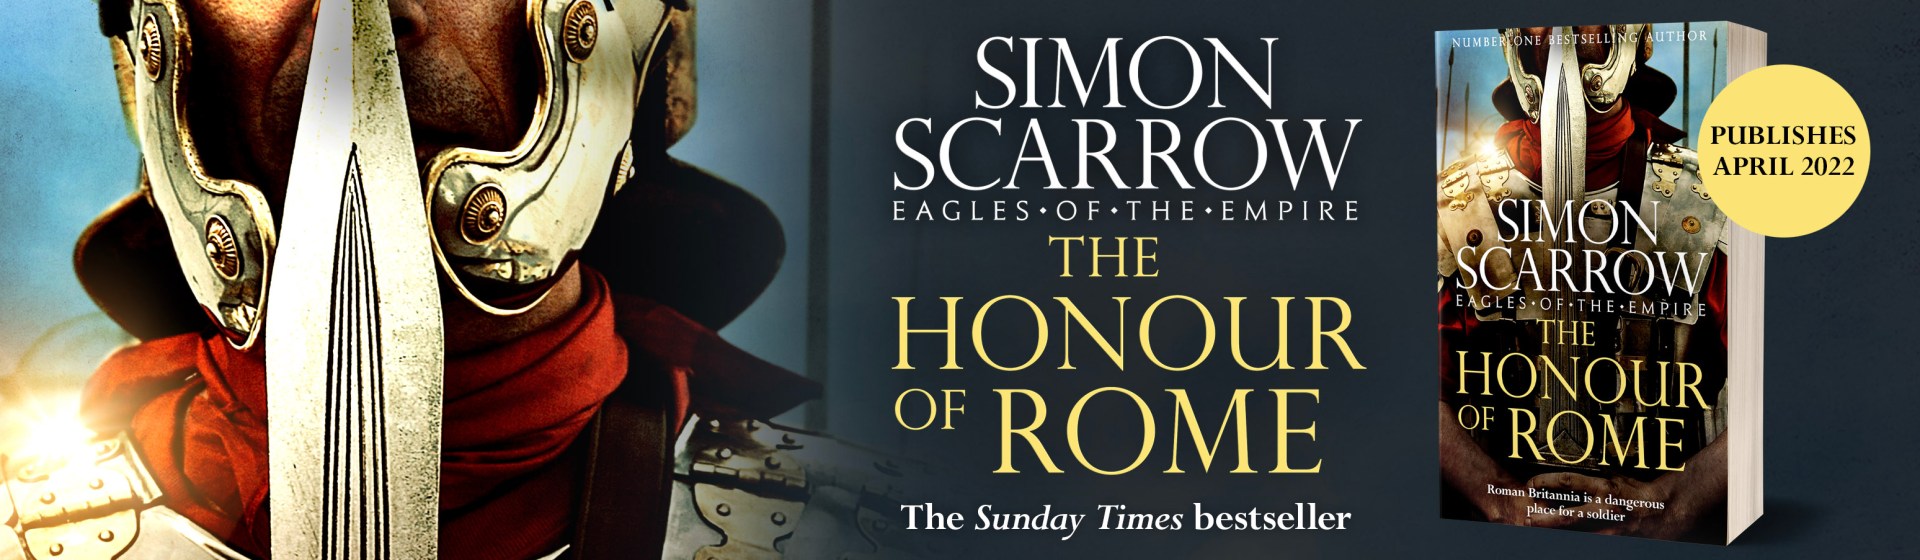 Simon Scarrow - Novelist - Self-employed